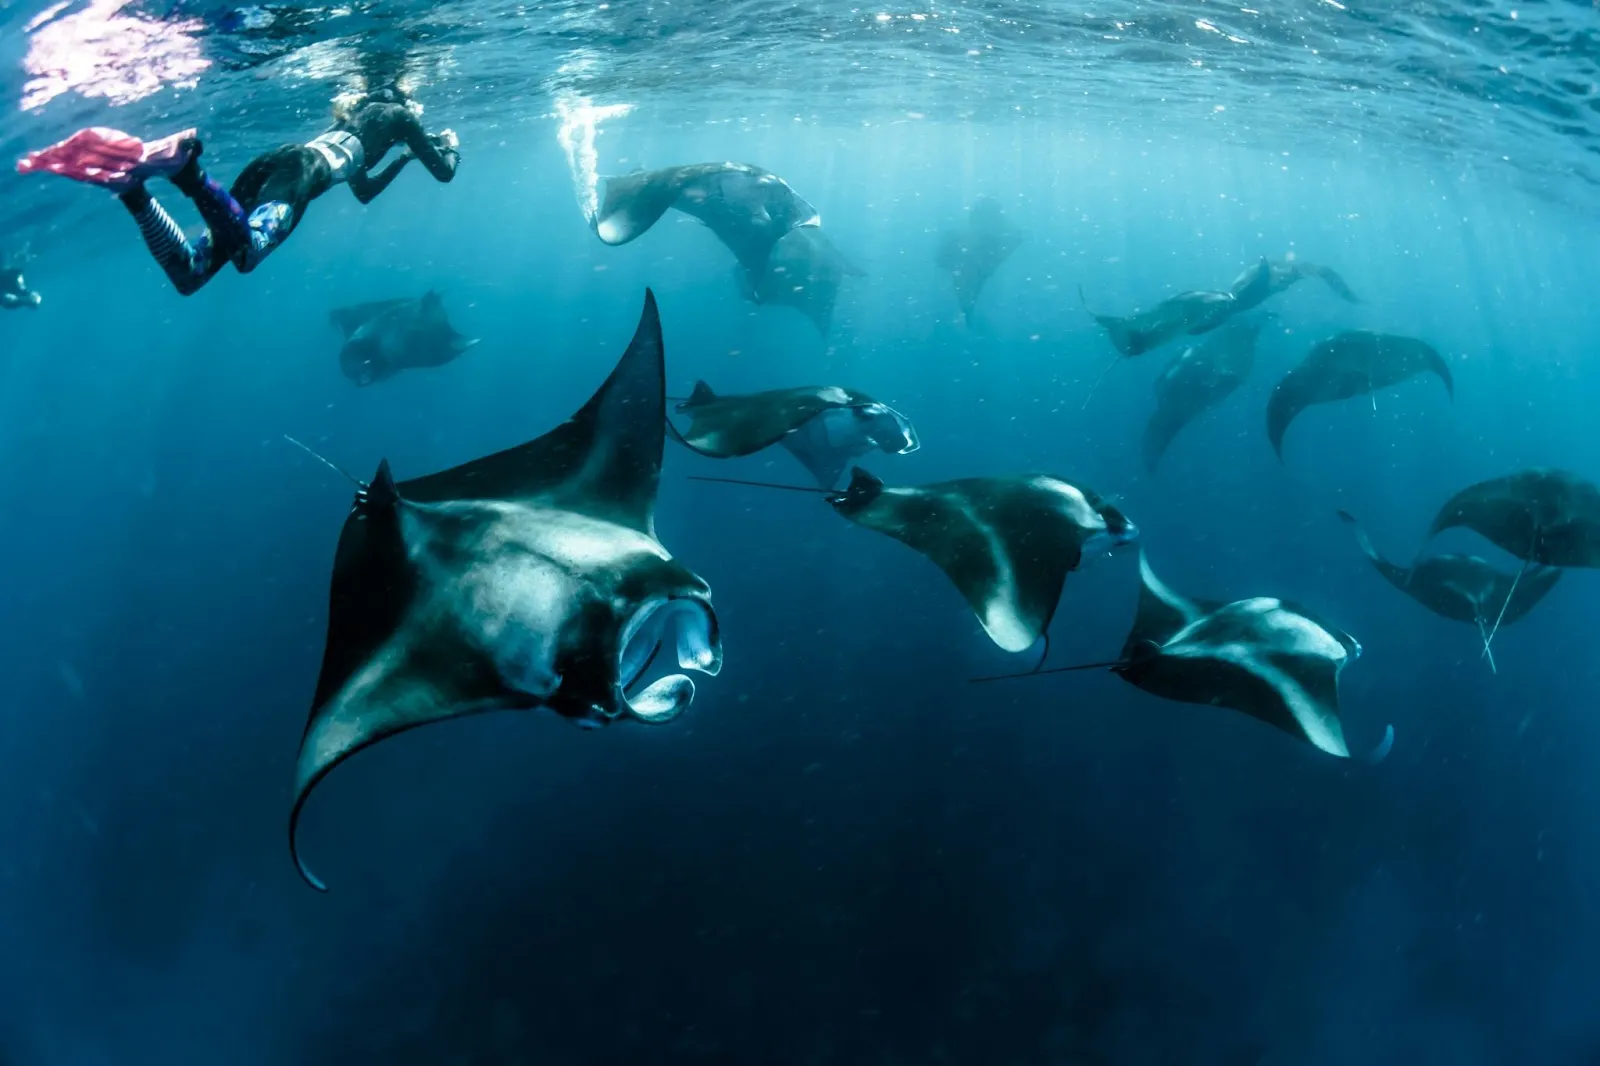 The group of manta rays swimming freely at Hin Muang in Koh Lanta